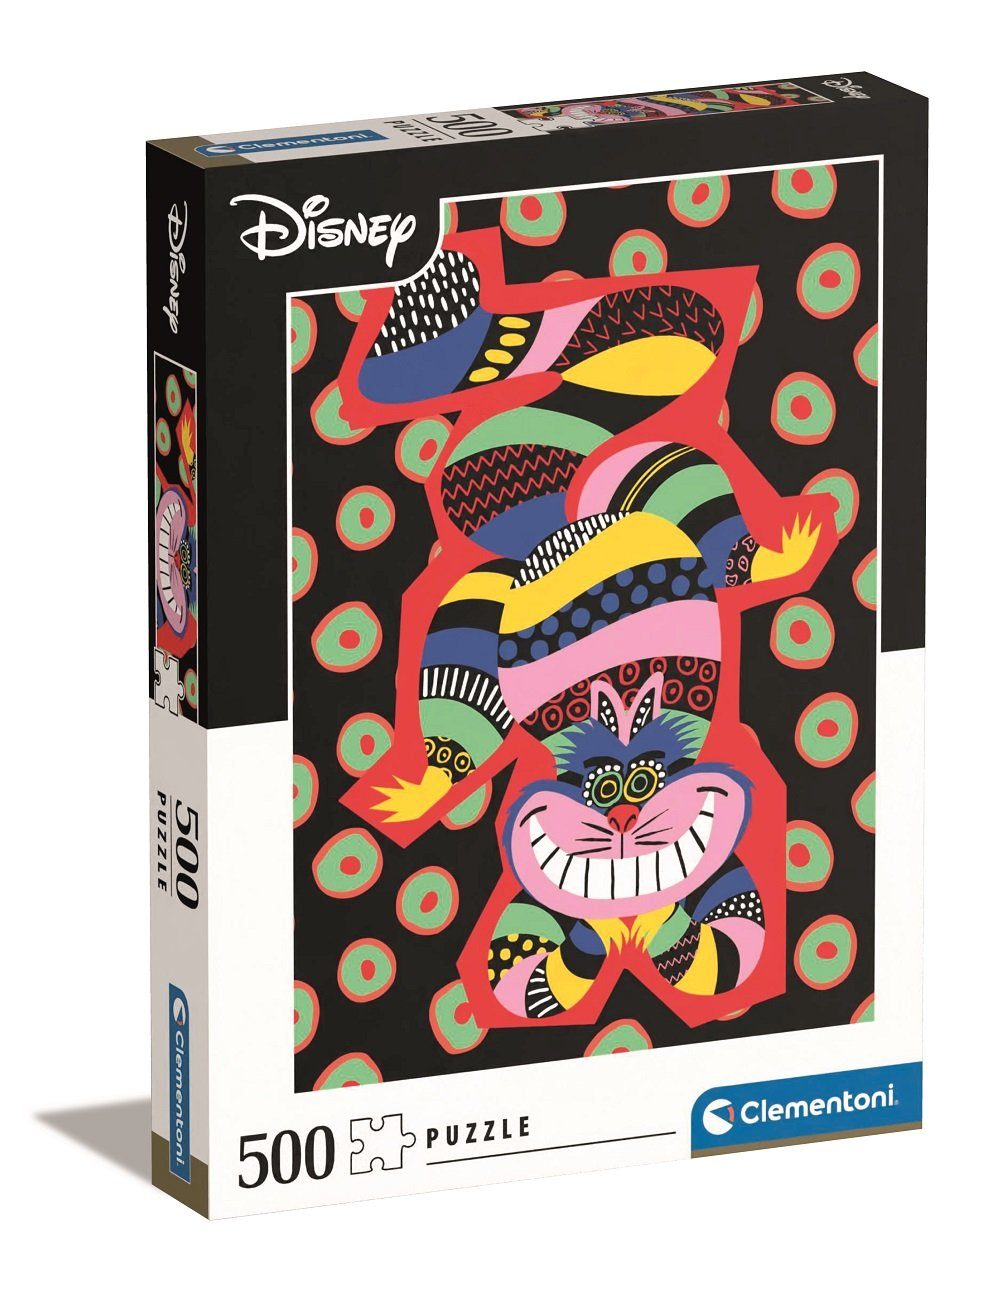 Puzzle, Clementoni® 500 Disney Puzzleteile 35123 Puzzle